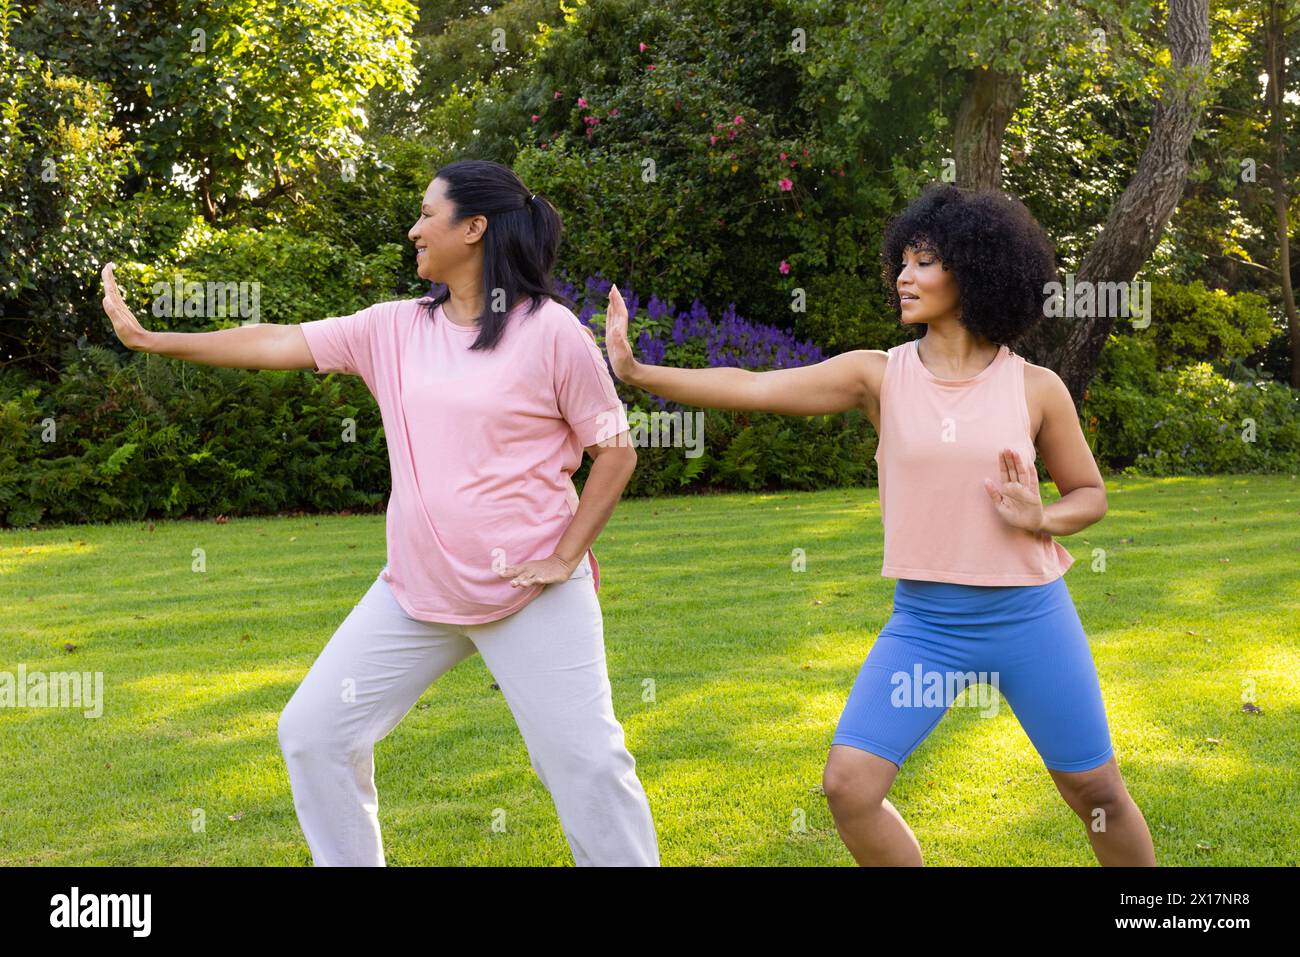 Madre e figlia birazziali che praticano yoga in giardino a casa. Madre che indossa la maglia rosa, figlia in blu, entrambe si divertono in esercizio, inalterate Foto Stock